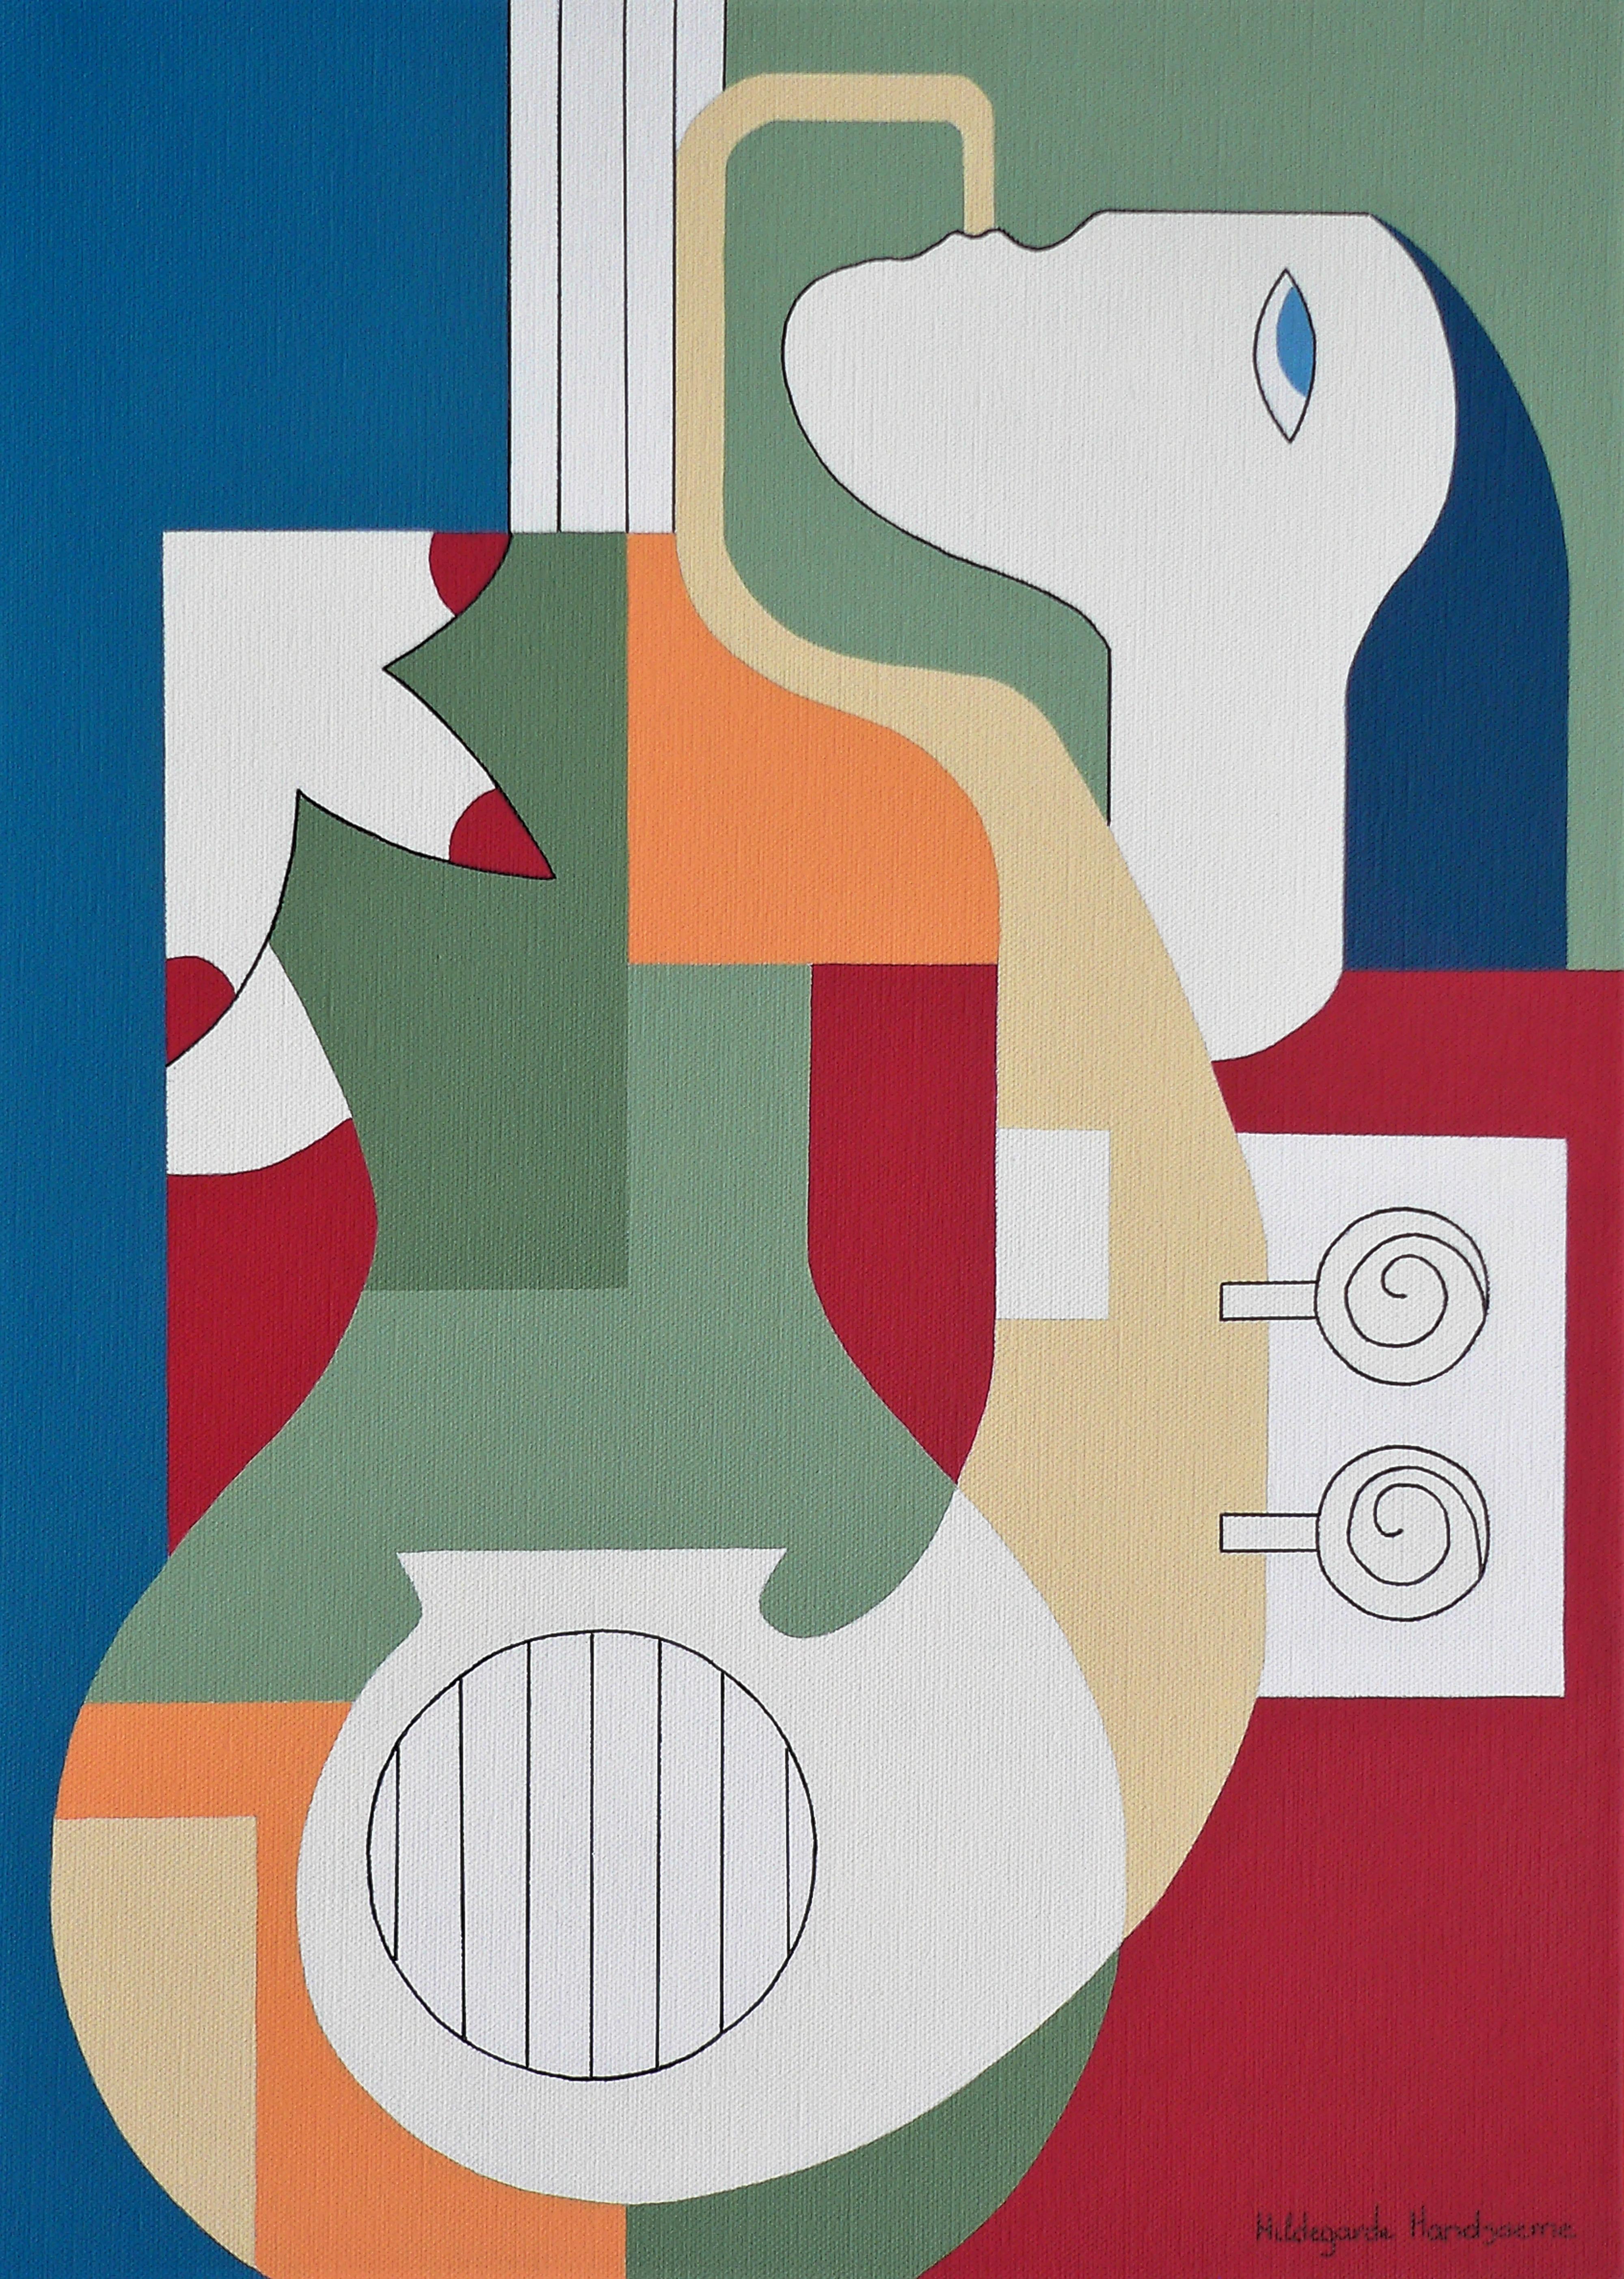 „The Saxo Charm“ von Hildegarde Handsaeme ist ein wunderbar gestaltetes abstraktes Porträtgemälde eines Musikers:: der Saxophon spielt. Die Musiksprache ist universell und bietet:: zusammen mit ihren tiefen Farben und dem figurativen Design:: jedem